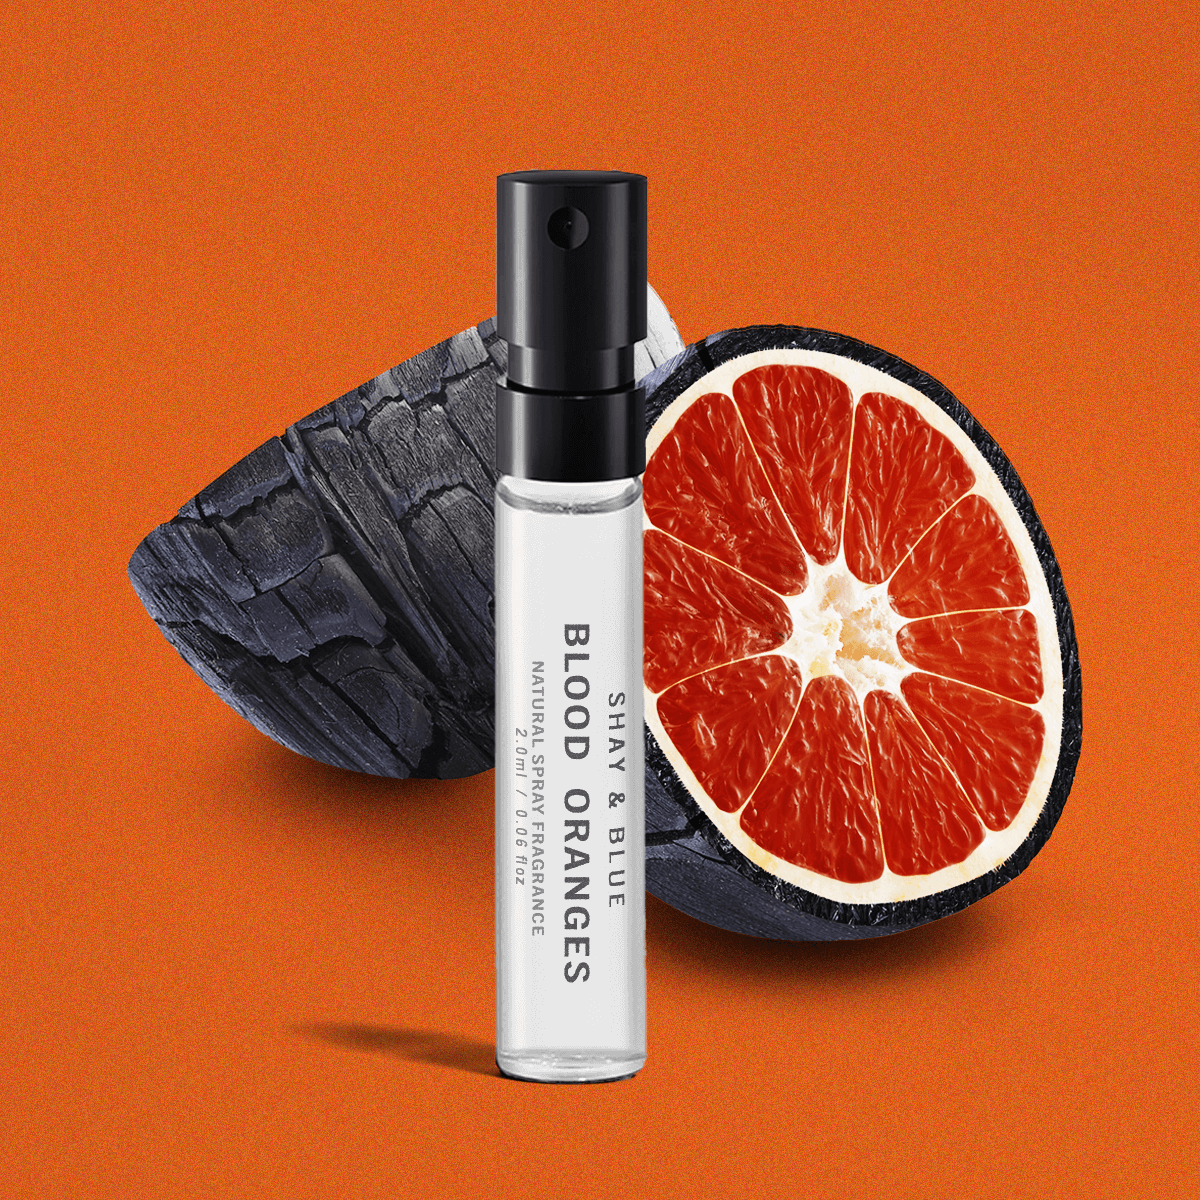 Blood Oranges Fragrance 2ml | Sappige bloedsinaasappels met een rijke en sensuele mix van hout en rokerig leer. | Schone geur voor alle seksen | Shay & Blue